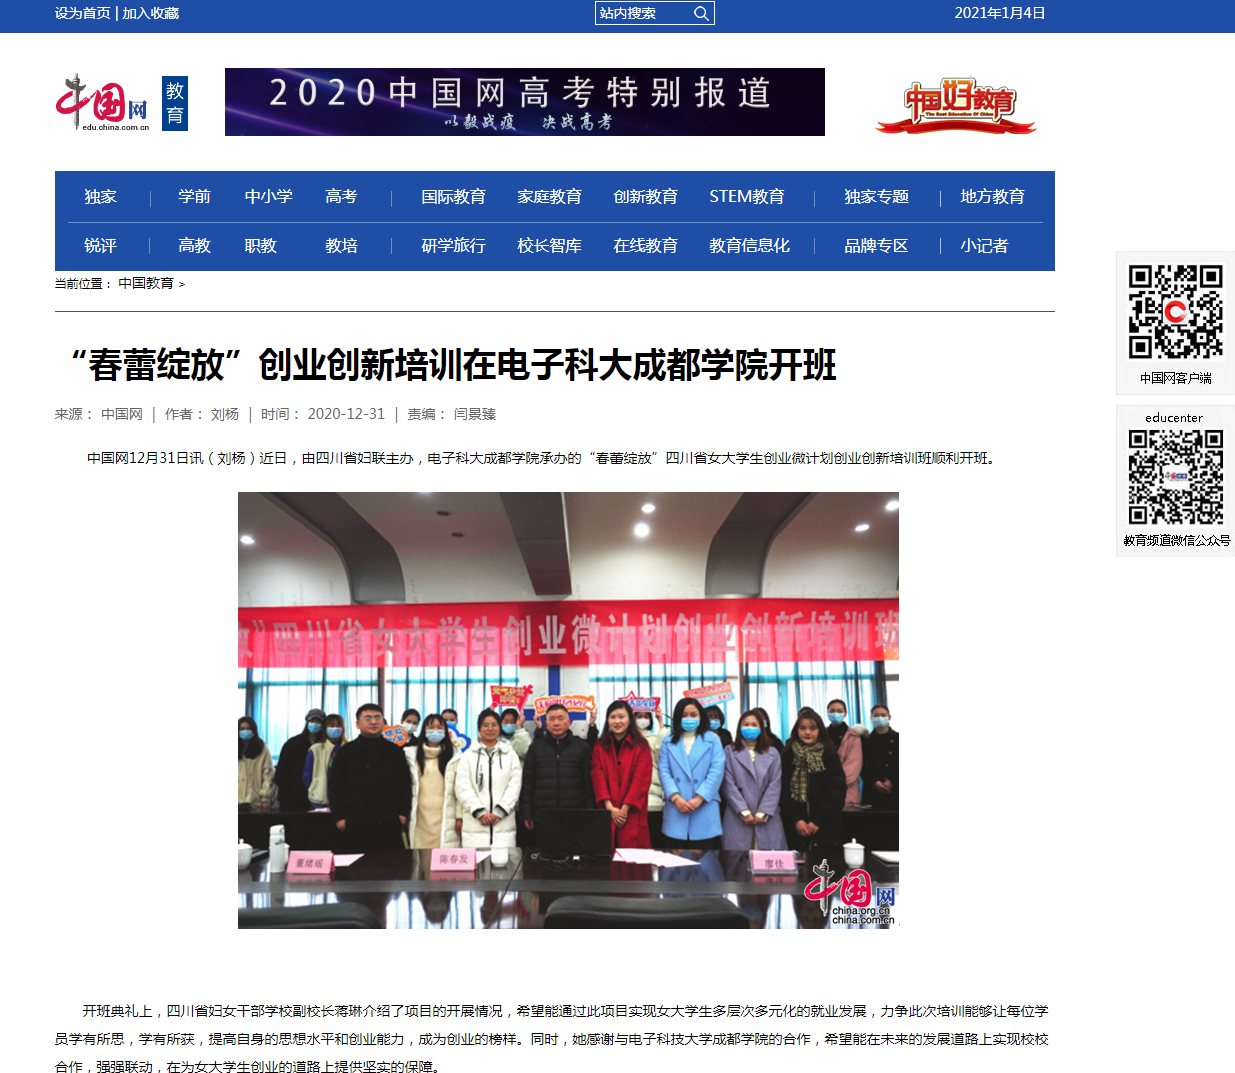 媒体科成丨中国网等多家媒体报道“春蕾绽放”创业创新培训在我校开班